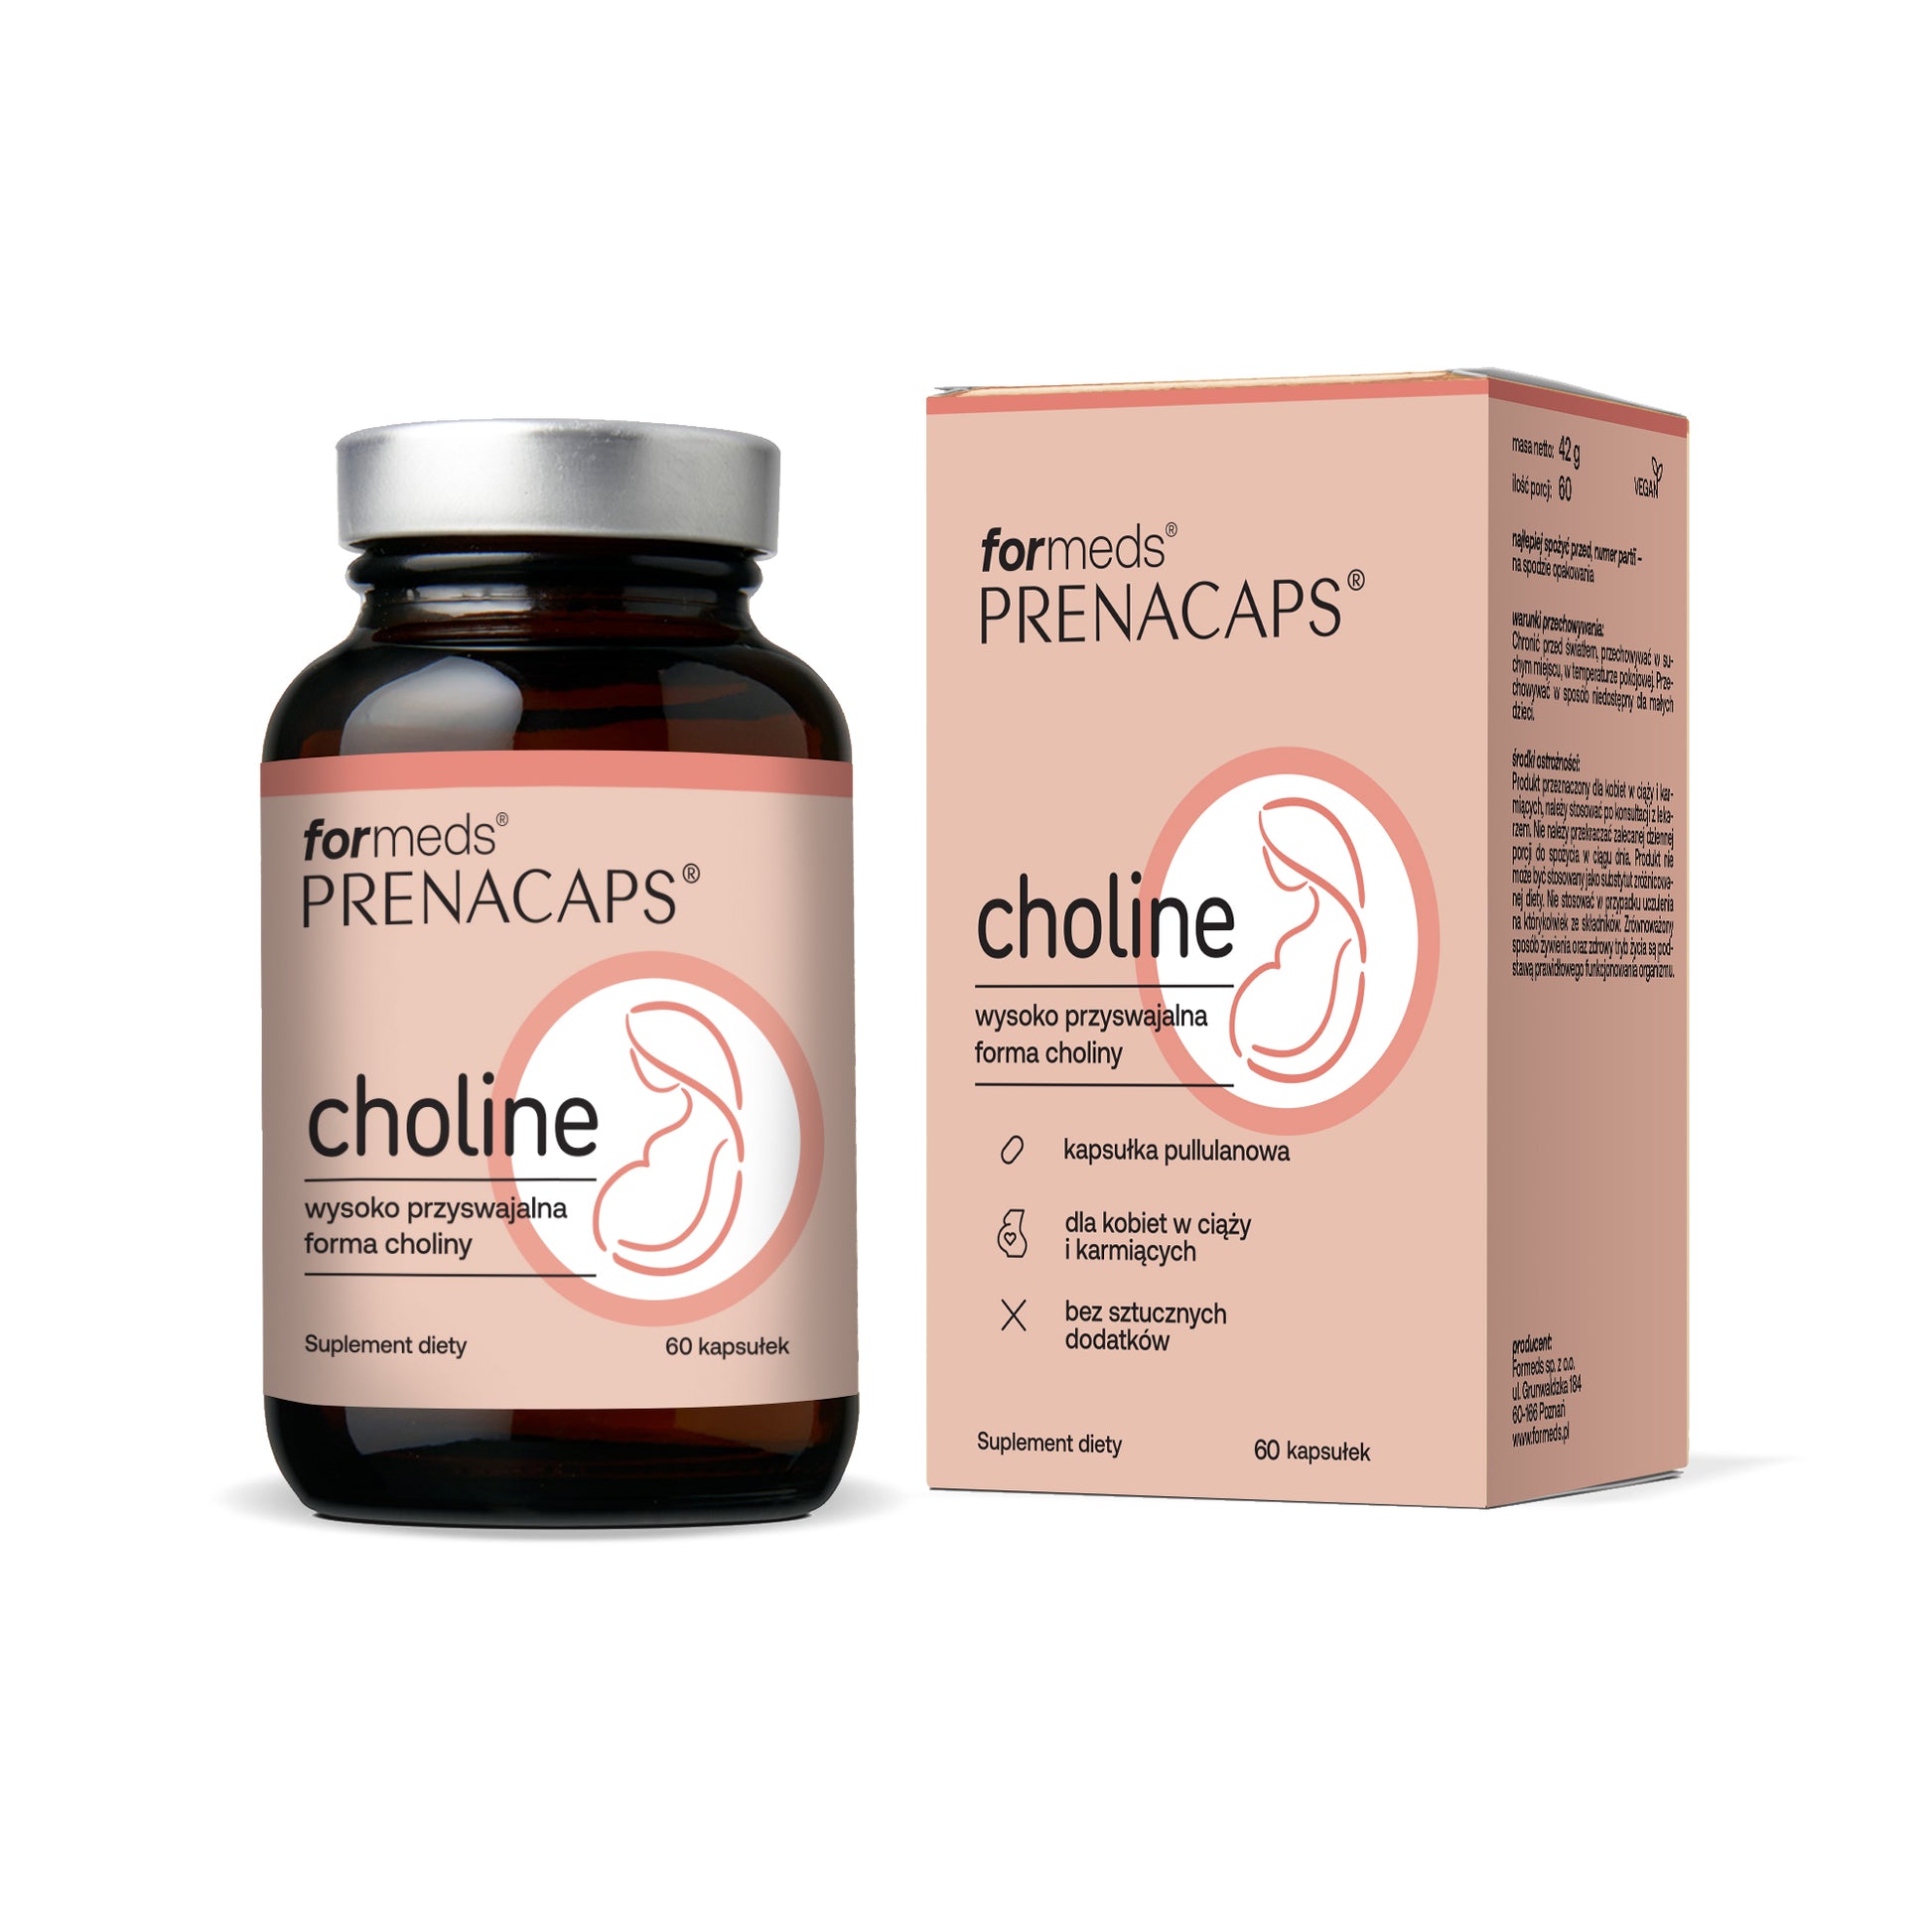 PRENACAPS Choline - cholina dla kobiet w ciąży